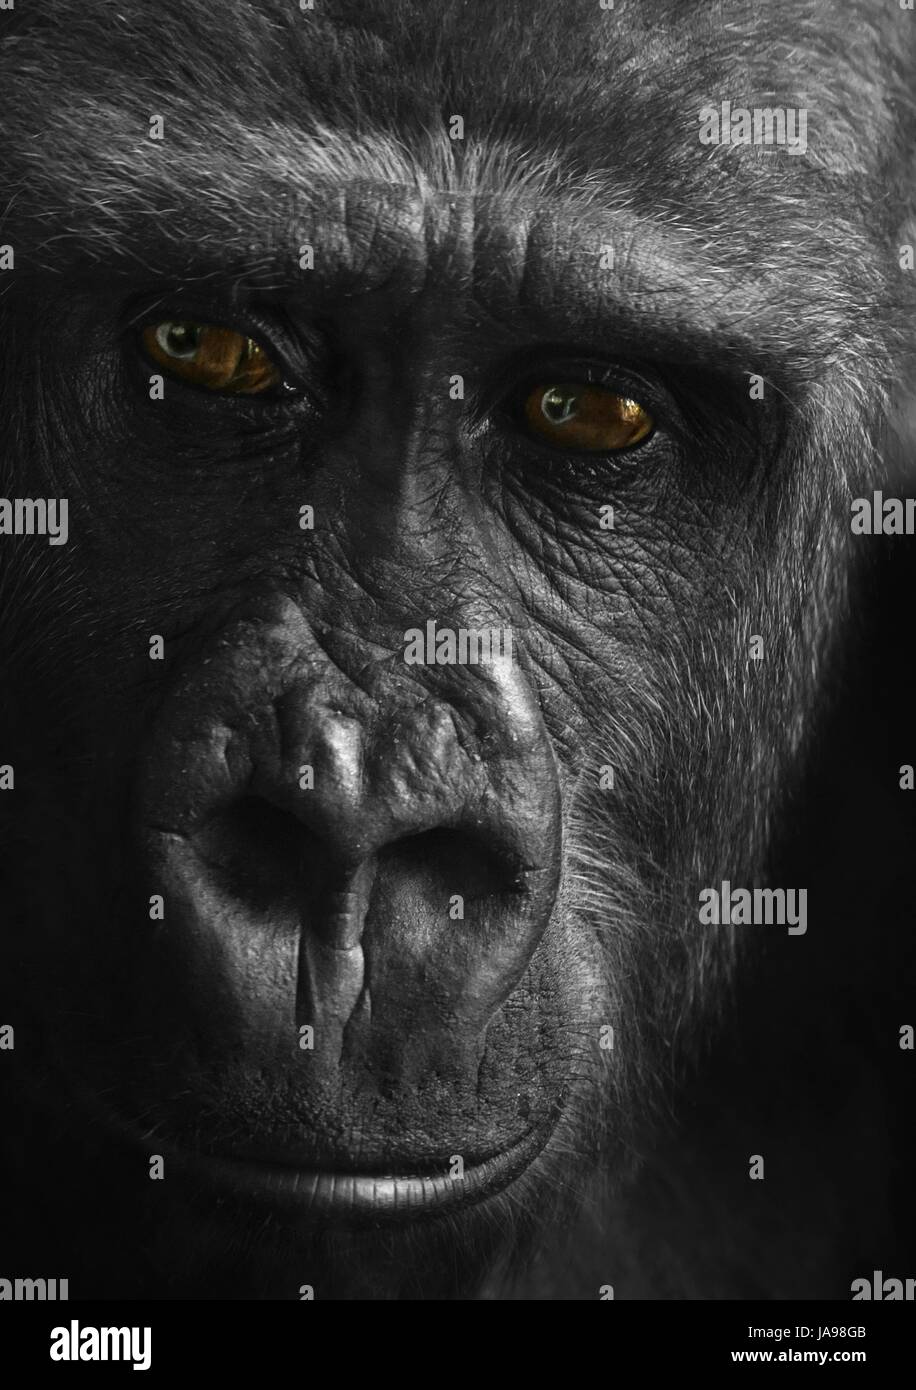 animal, portrait, monkey, eyes, illustration, gorilla, drawing, photo, picture, Stock Photo